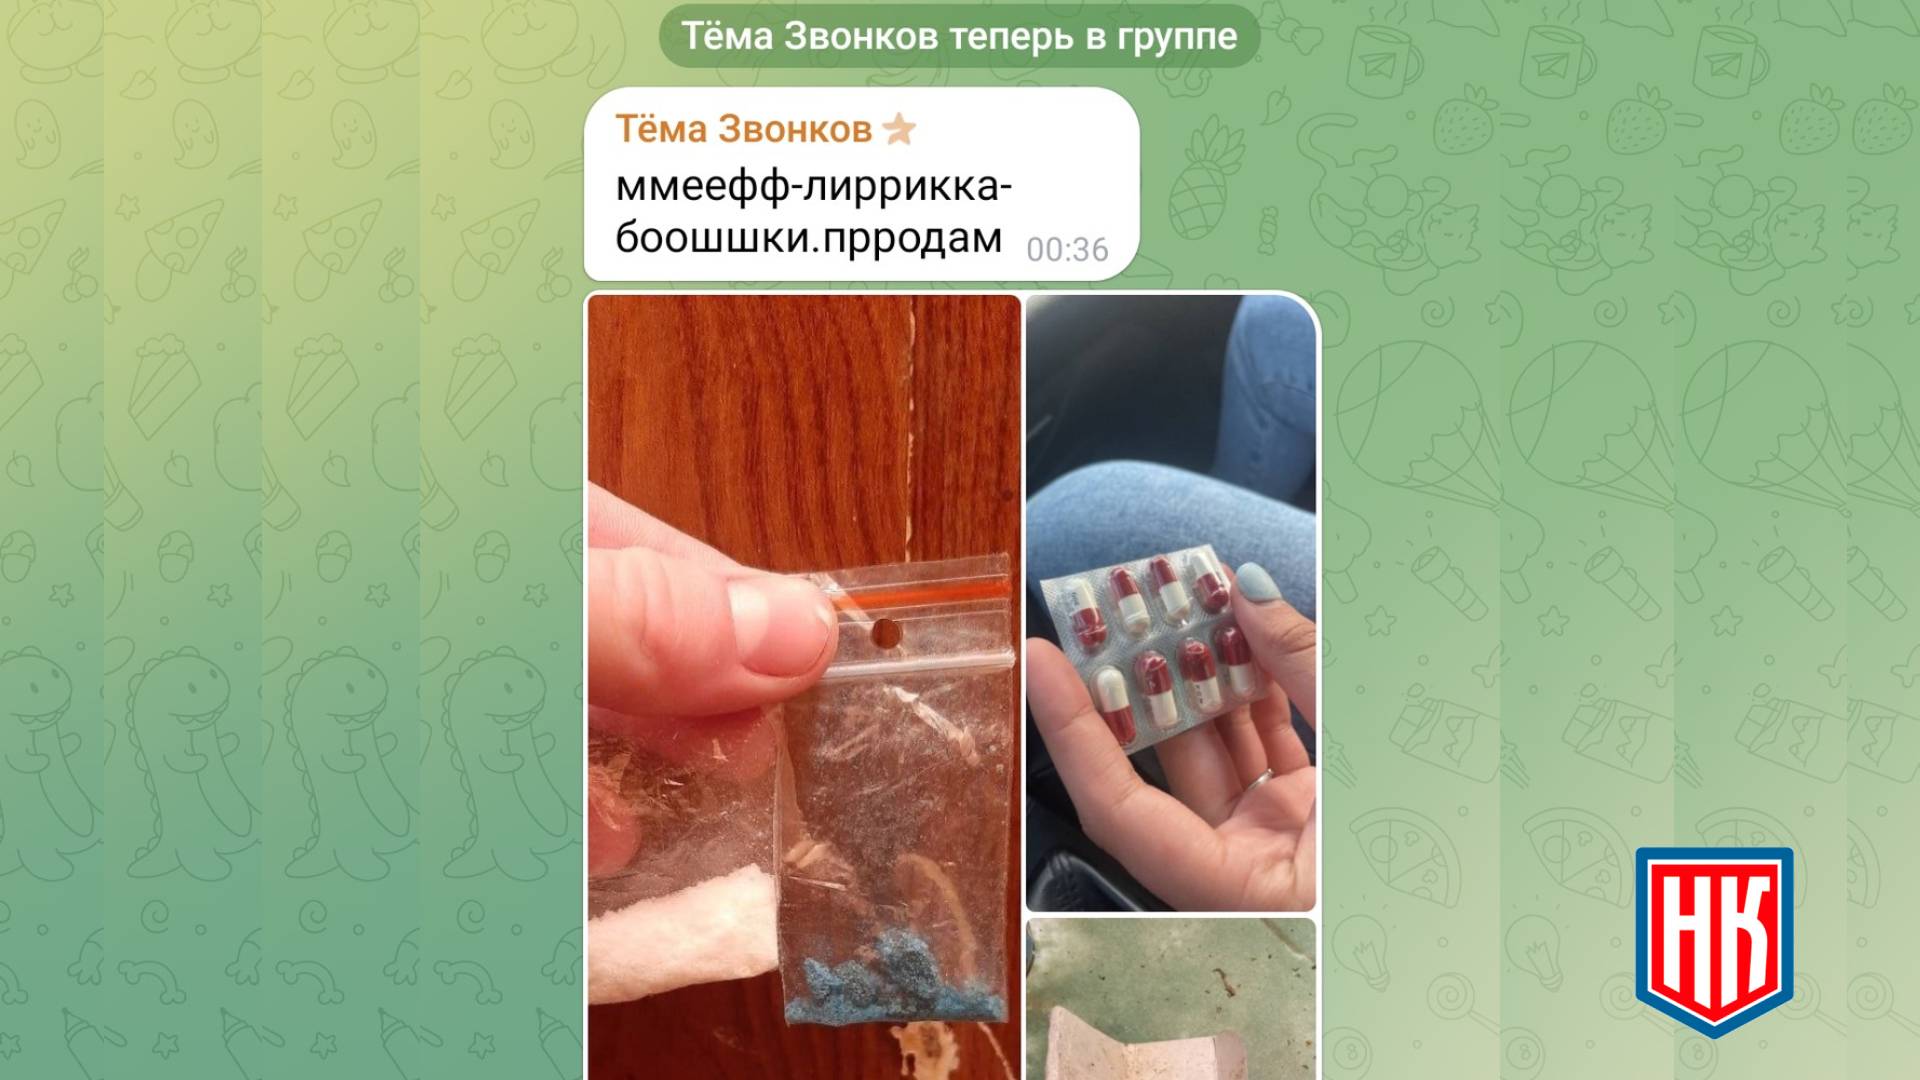 Реклама запрещенных веществ в Телеграм чате района в Москве